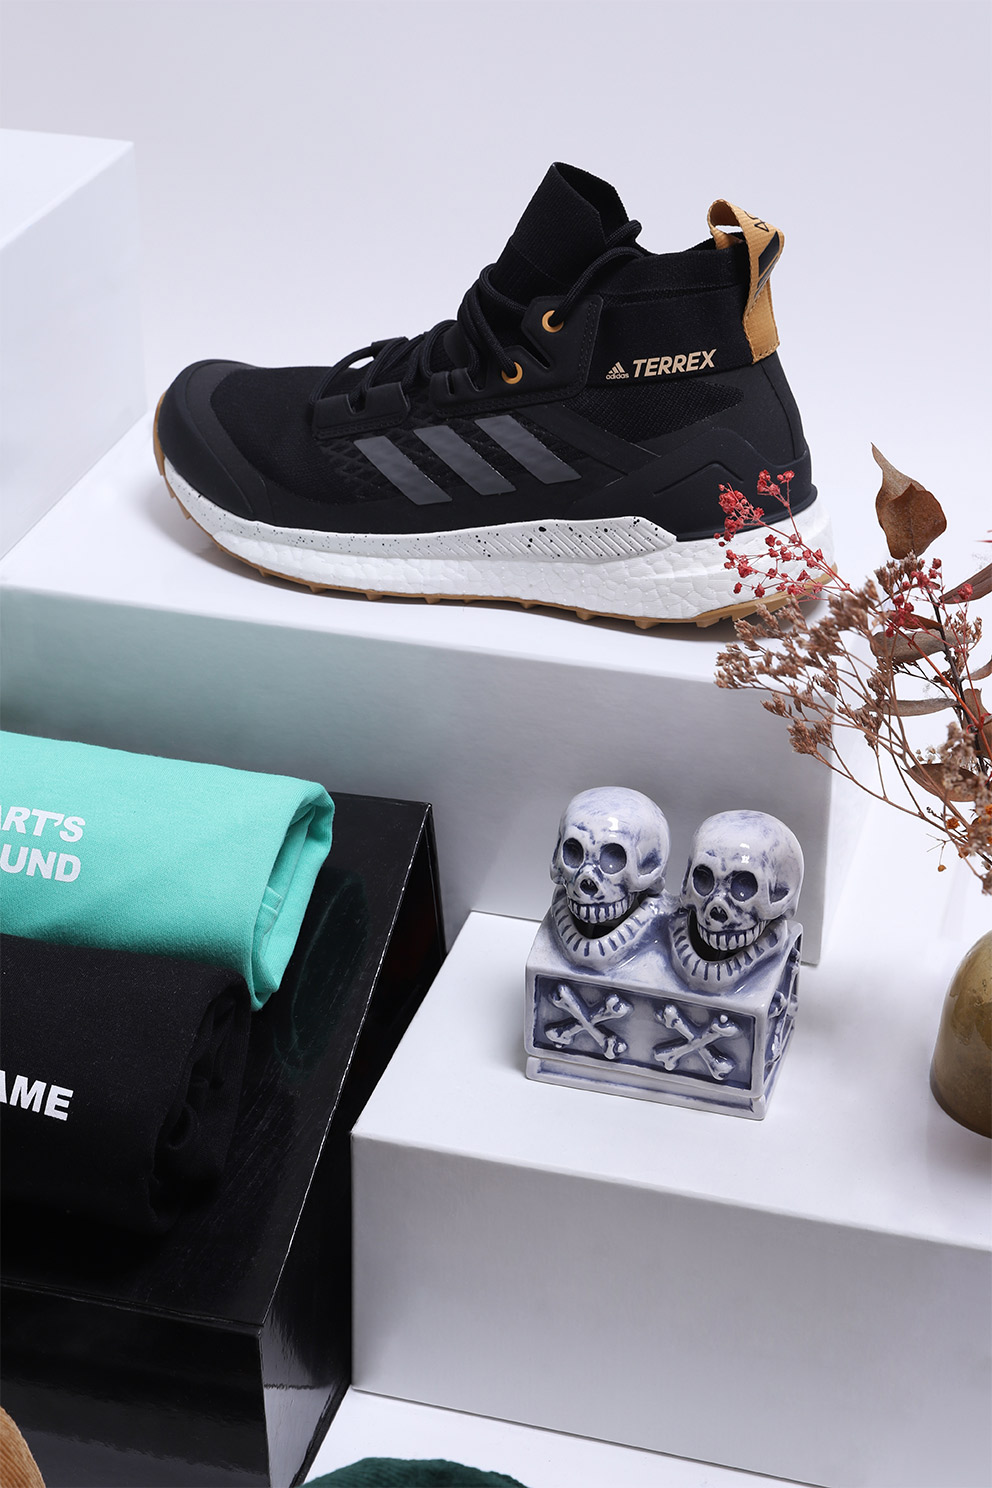 Adidas Terrex as a gift